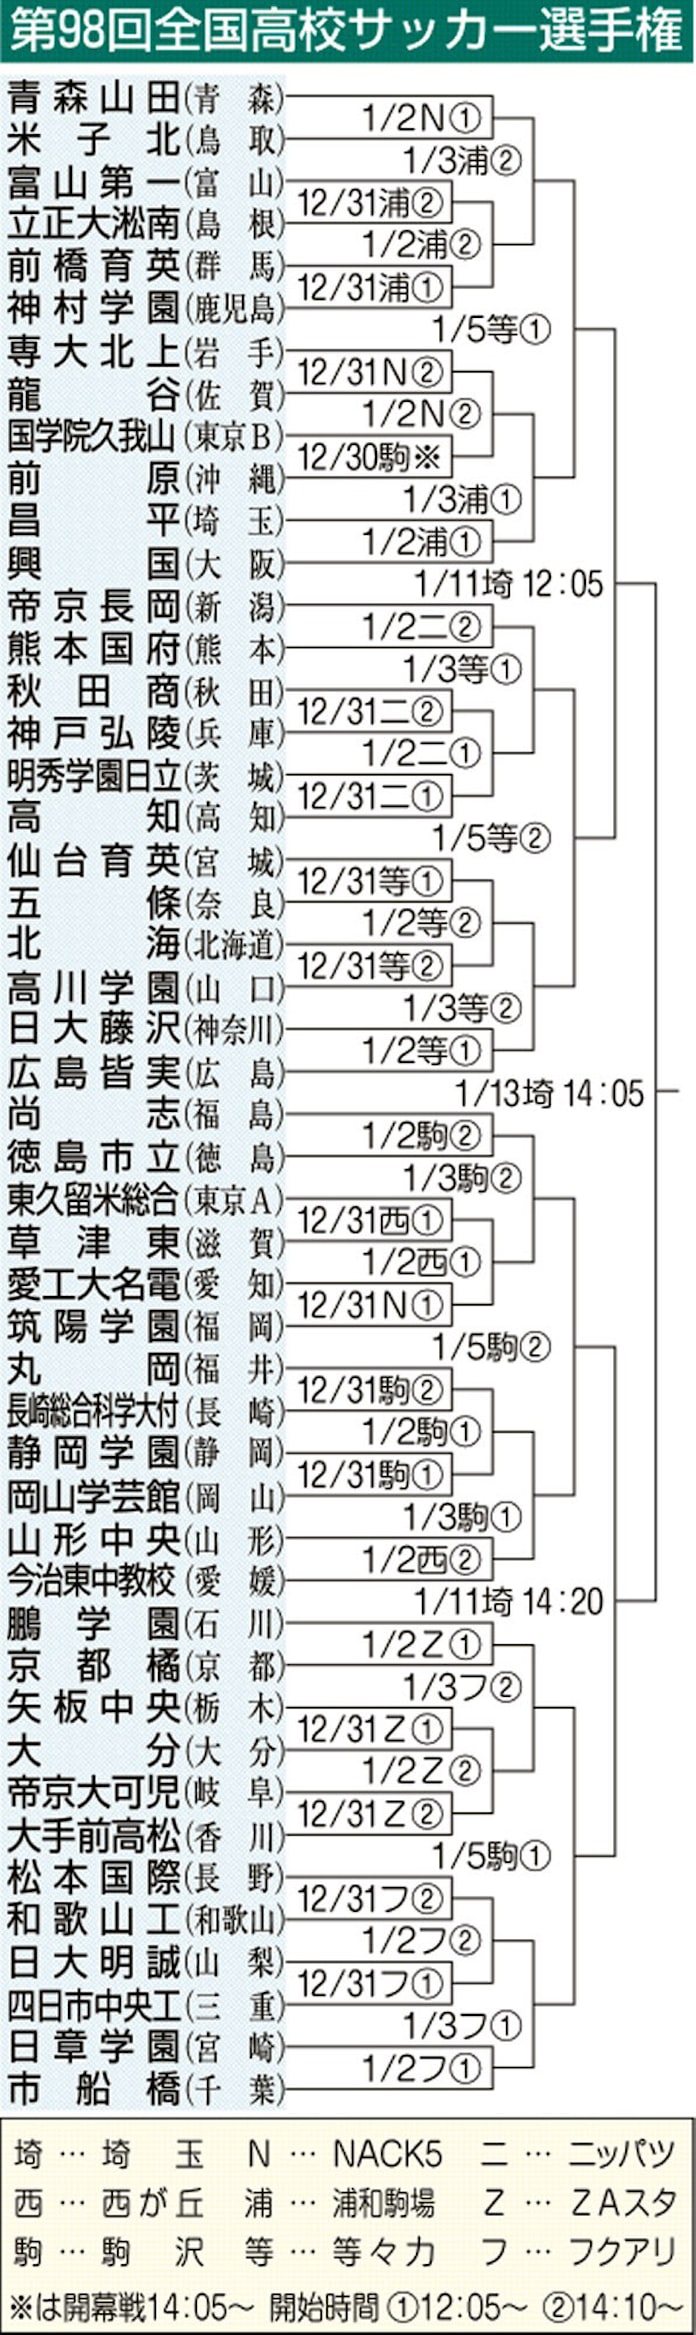 高校サッカー30日開幕 全国48代表 決勝は1月13日 日本経済新聞